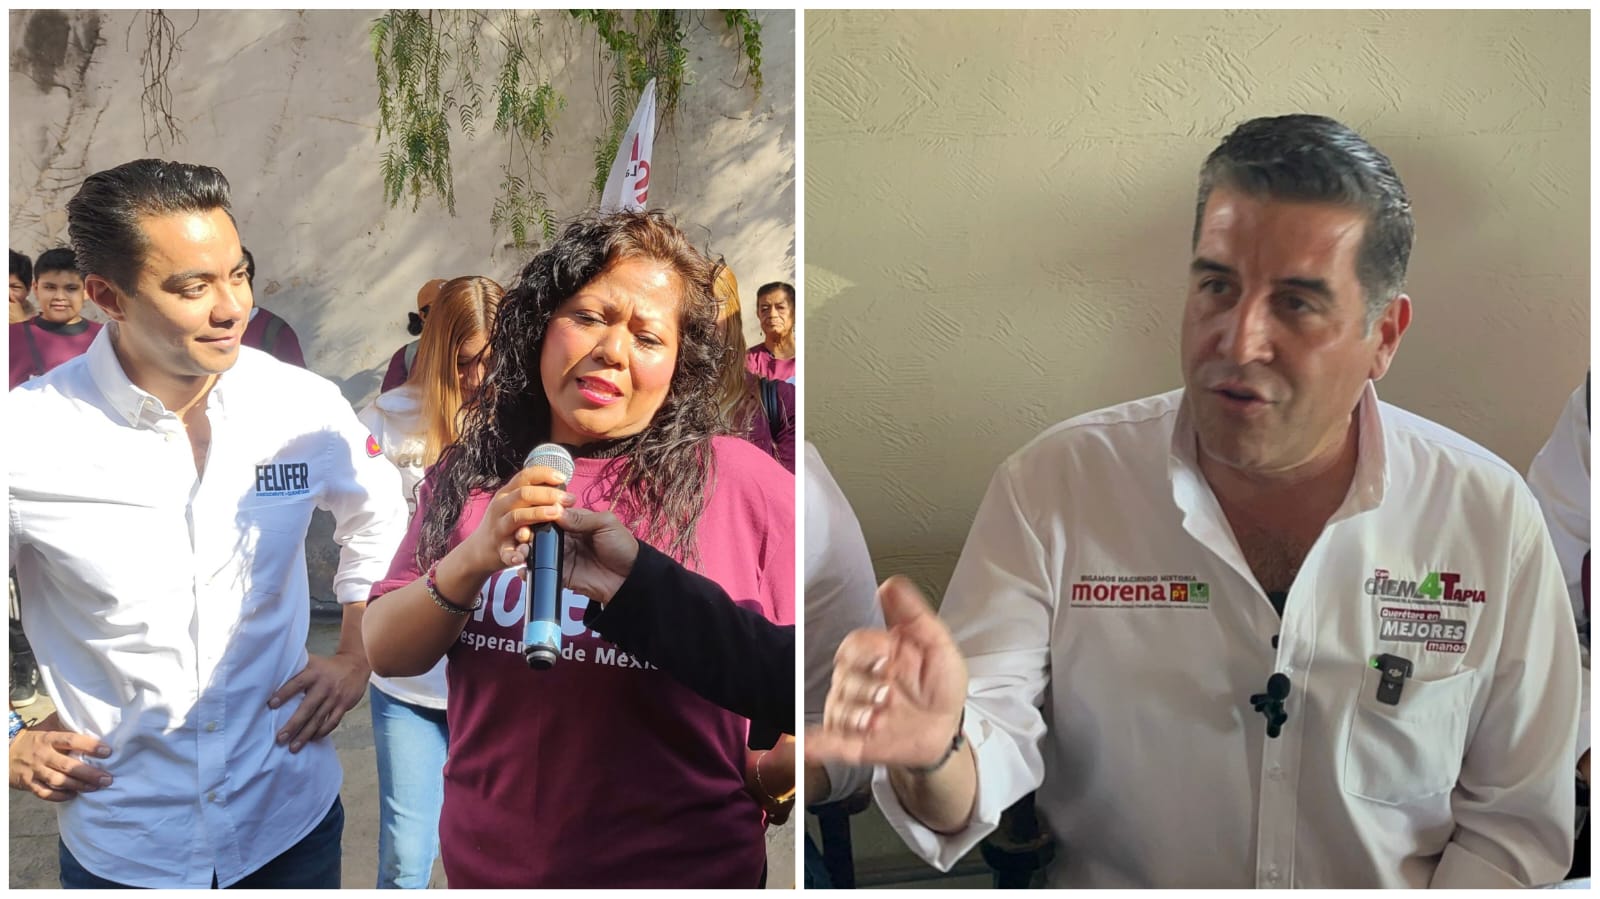 Simpatizantes de Morena acudieron a apoyar a Felifer y Chema Tapia los niega